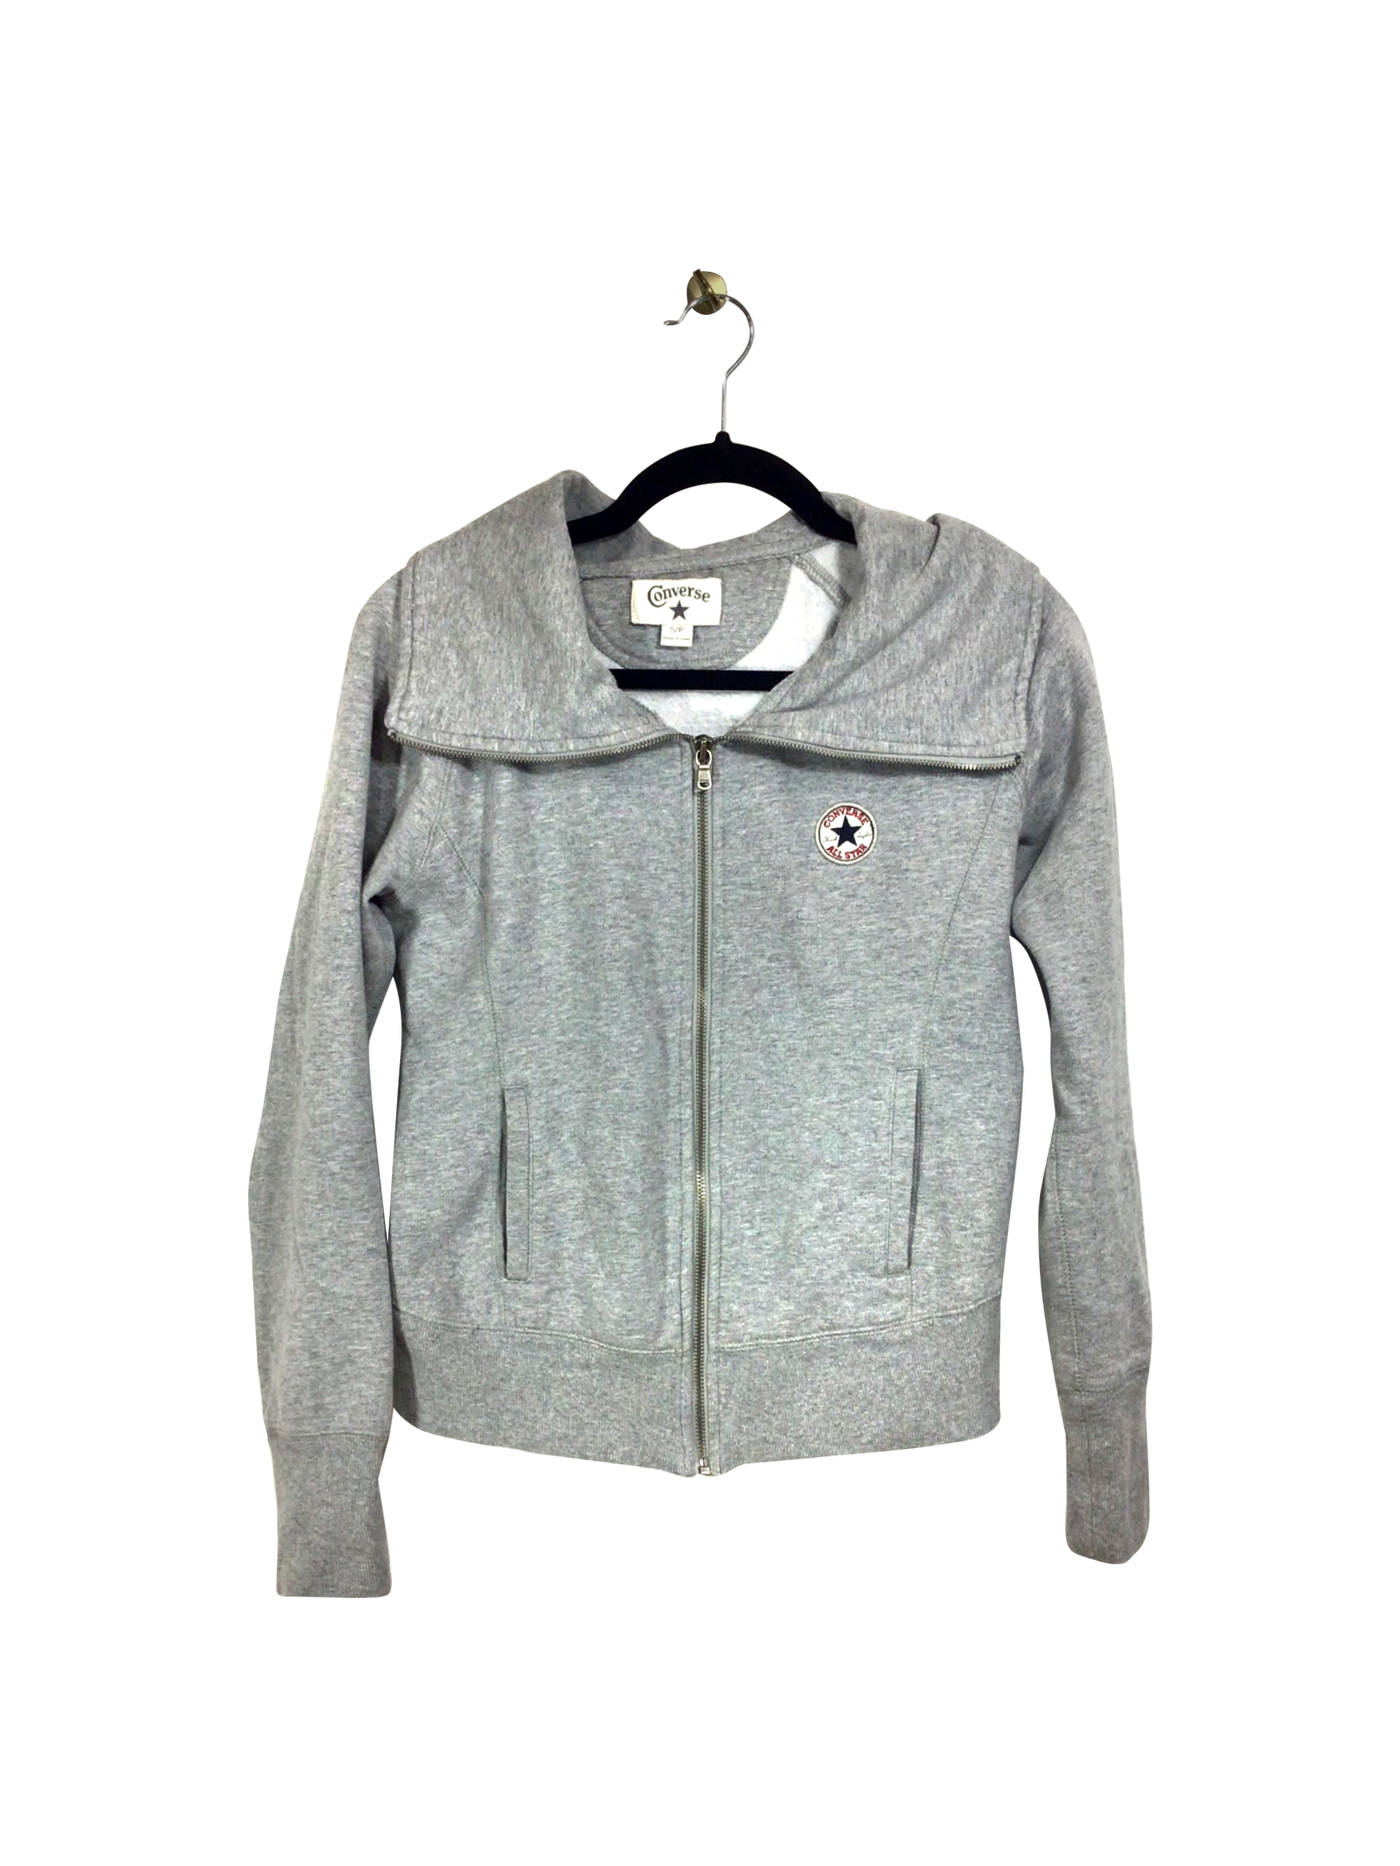 CONVERSE Sweatshirt Regular fit in Gray - Size S | 23.49 $ KOOP